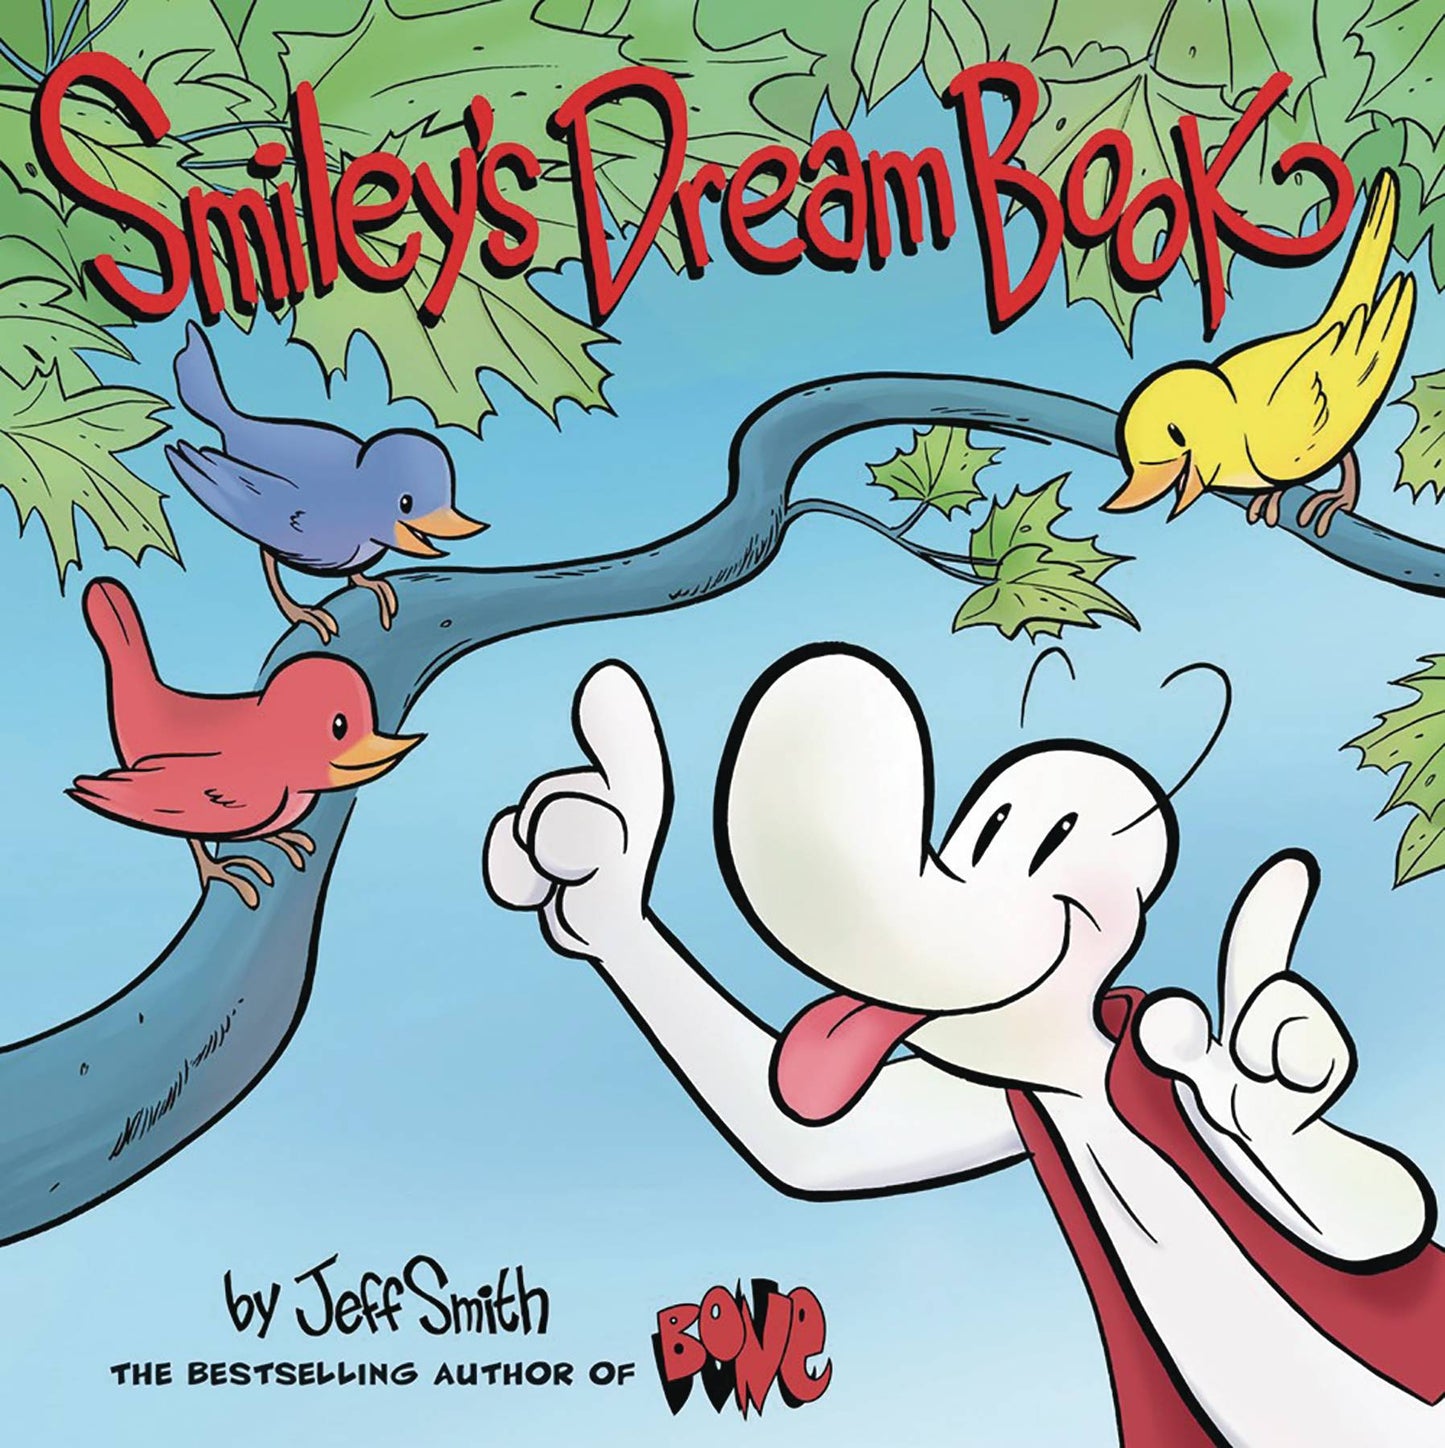 Smiley Dream Book Hc Picturebook